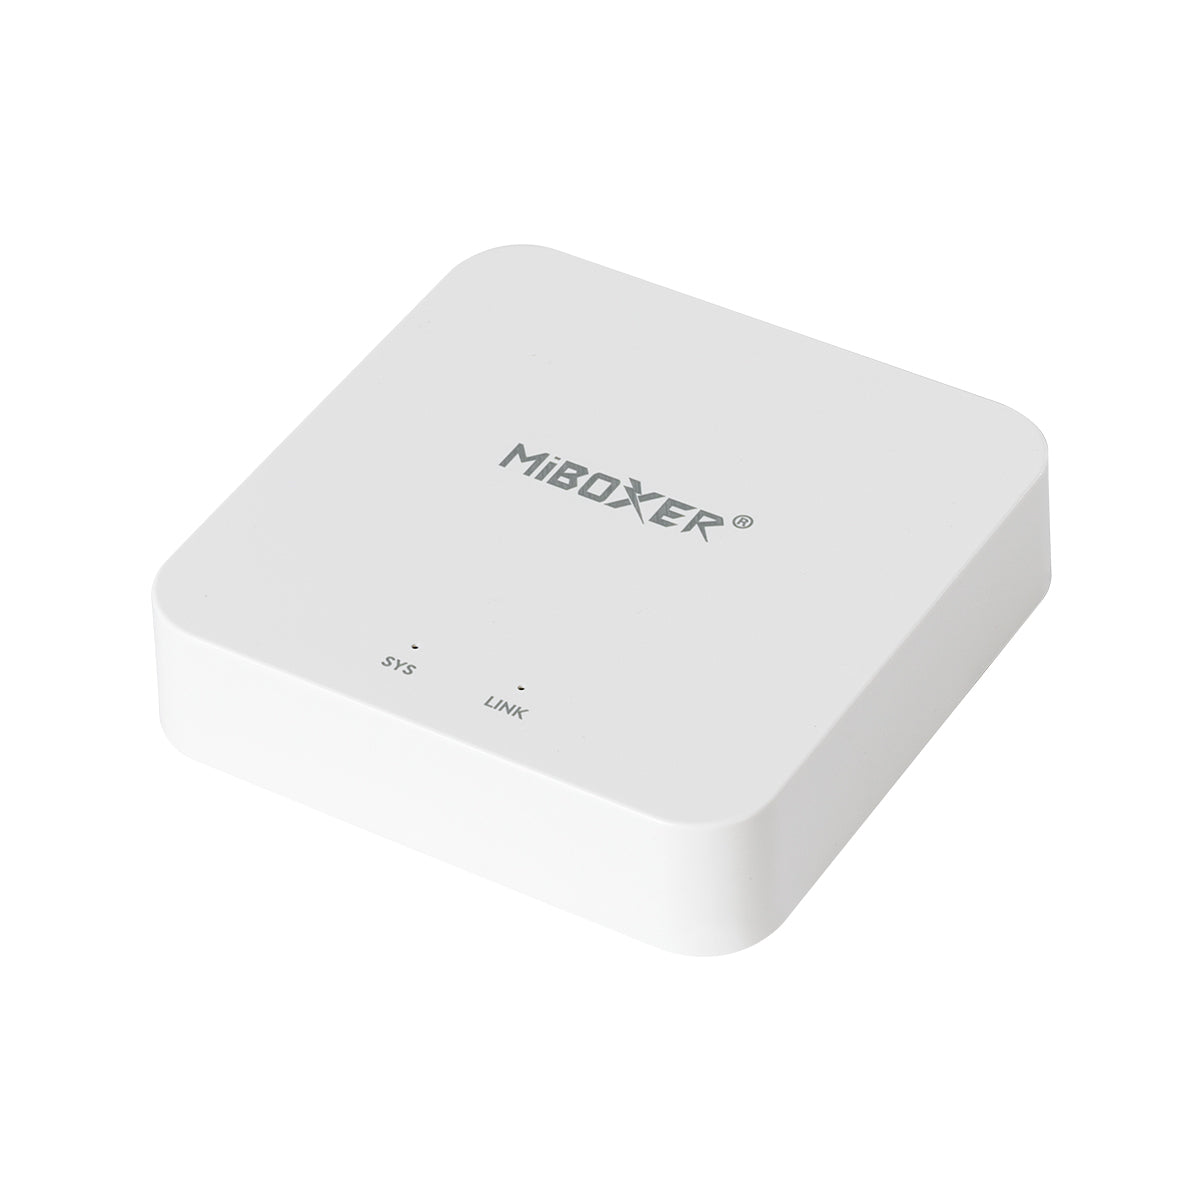 GloboStar® 73436 WL-BOX2 Mi-BOXER Smart Gateway Bridge Adapter WiFi to RF 2.4Ghz - Tuya Smart APP - USB Type-C DC 5V - IP20 Μ6.4 x Π6.4 x Υ1.5cm - 5 Years Warranty